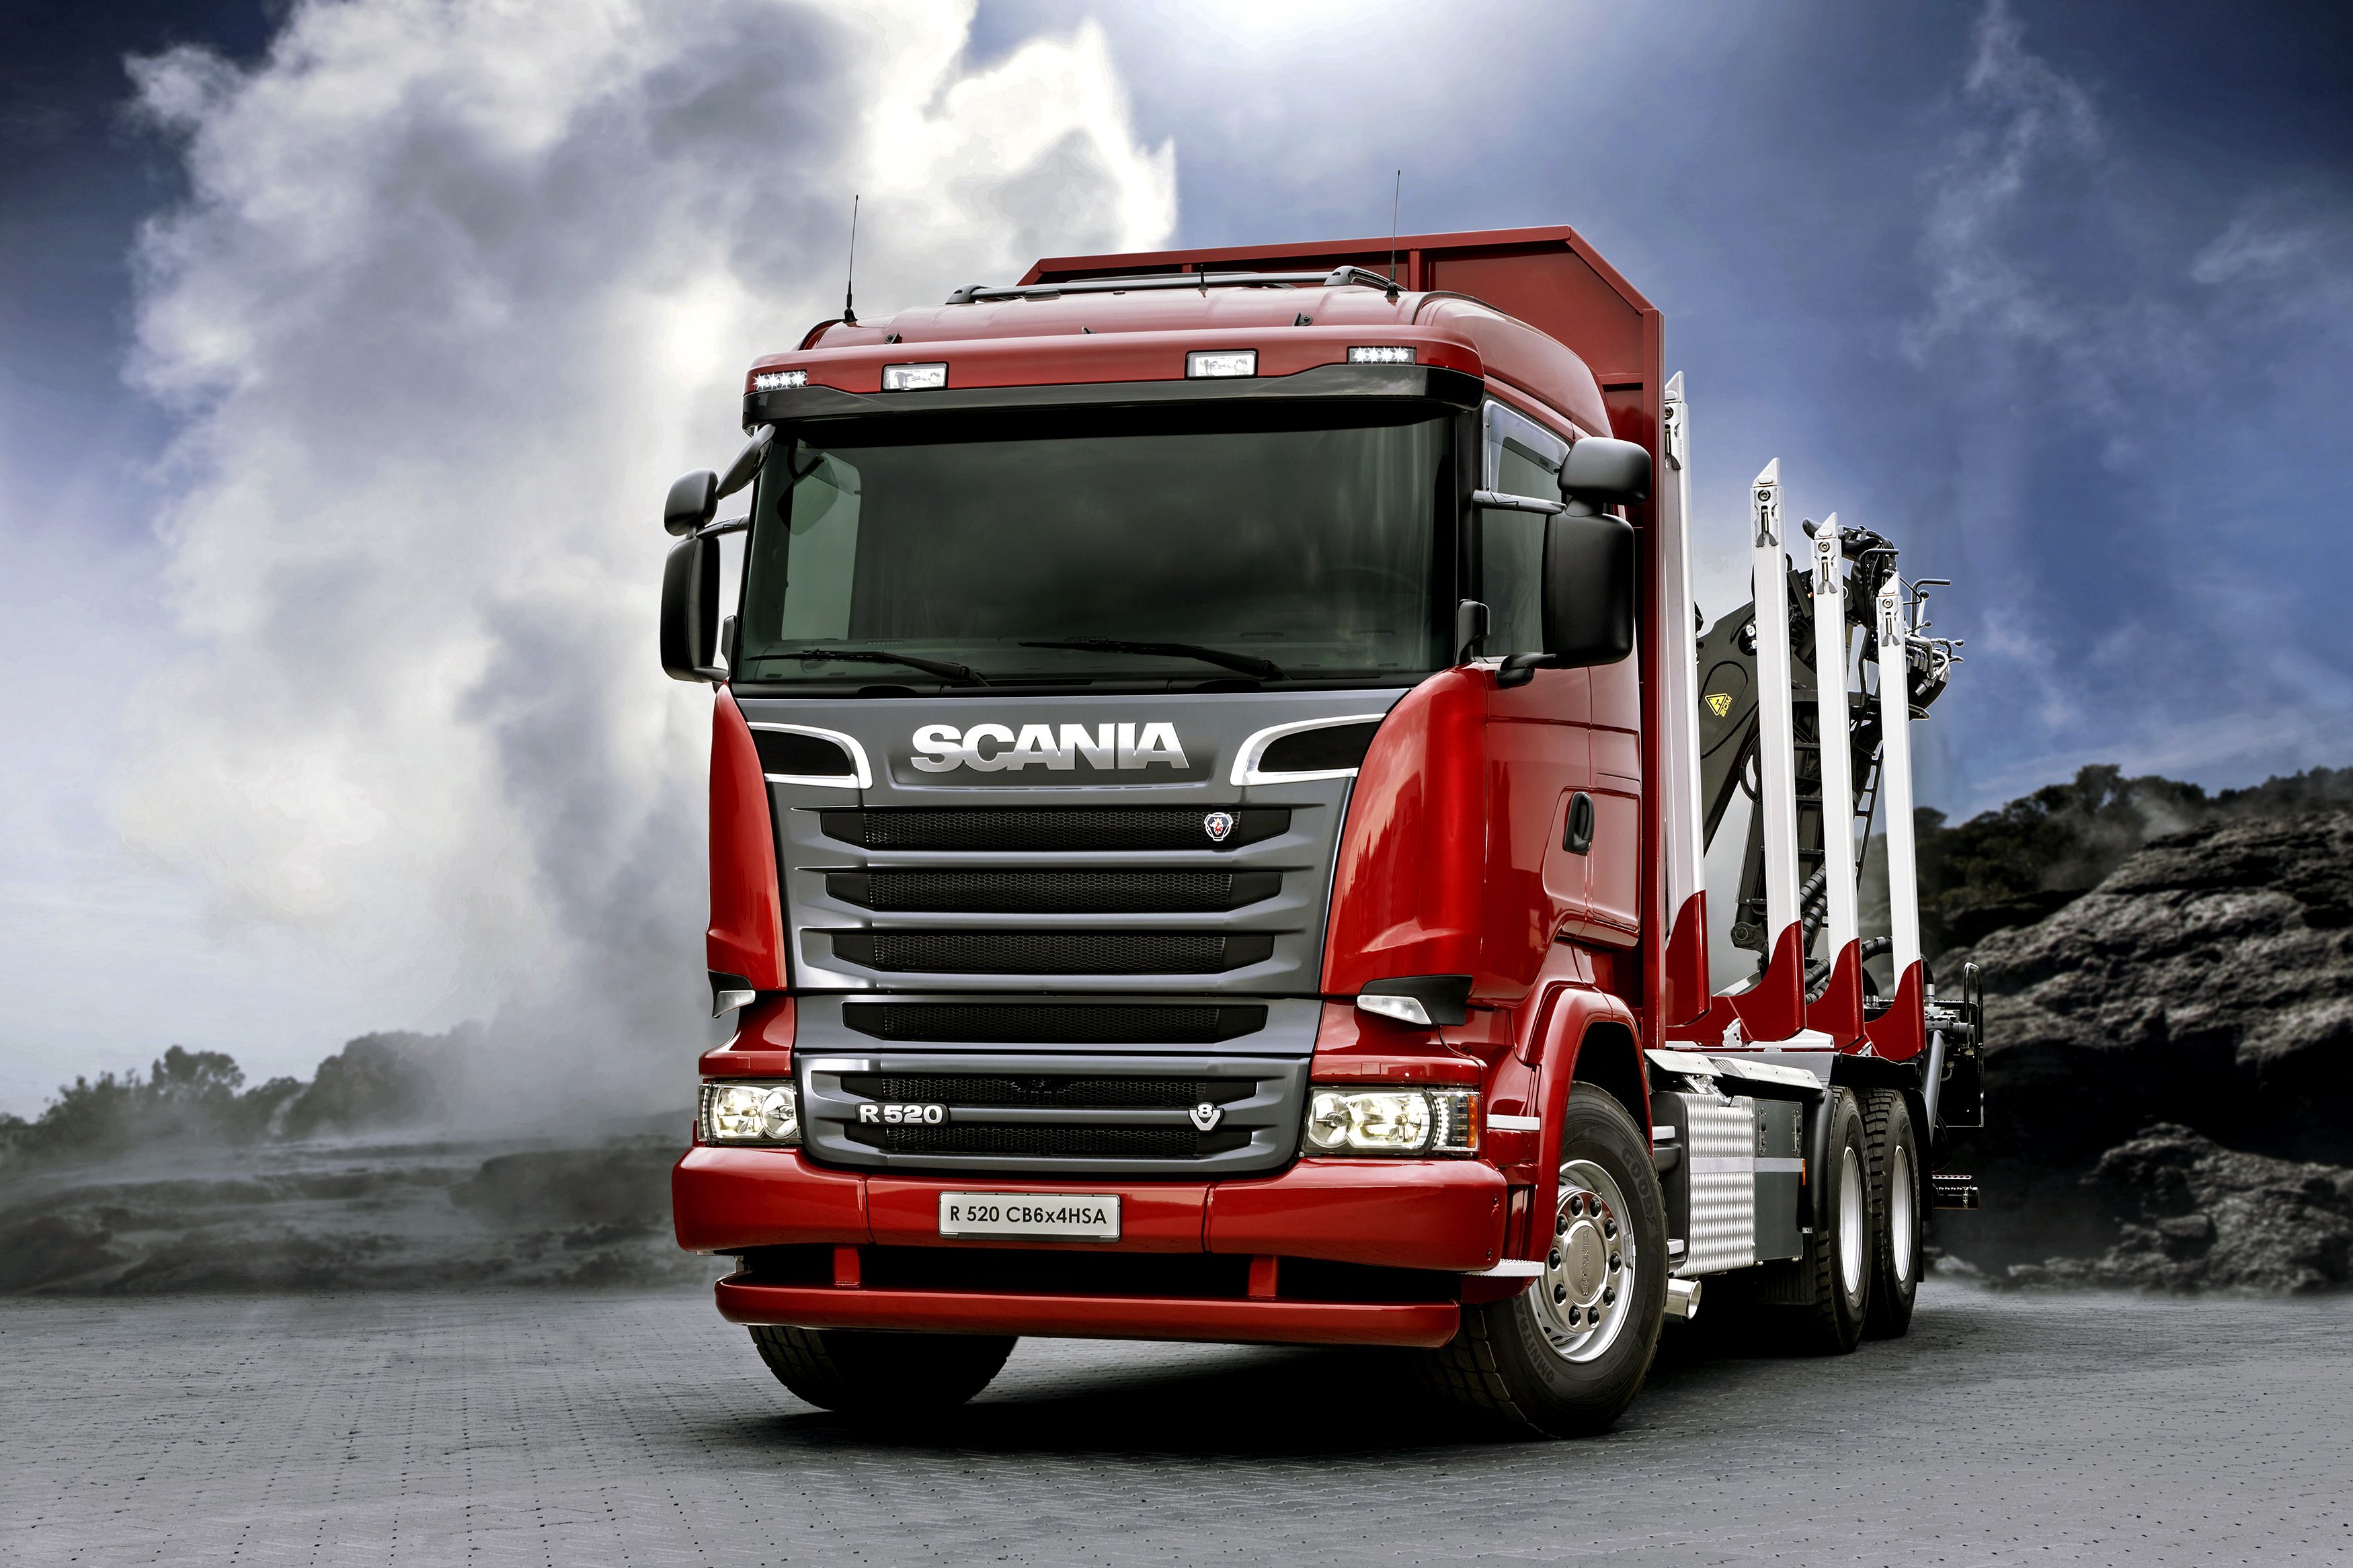 Scania Truck Vehicle 3500x2333